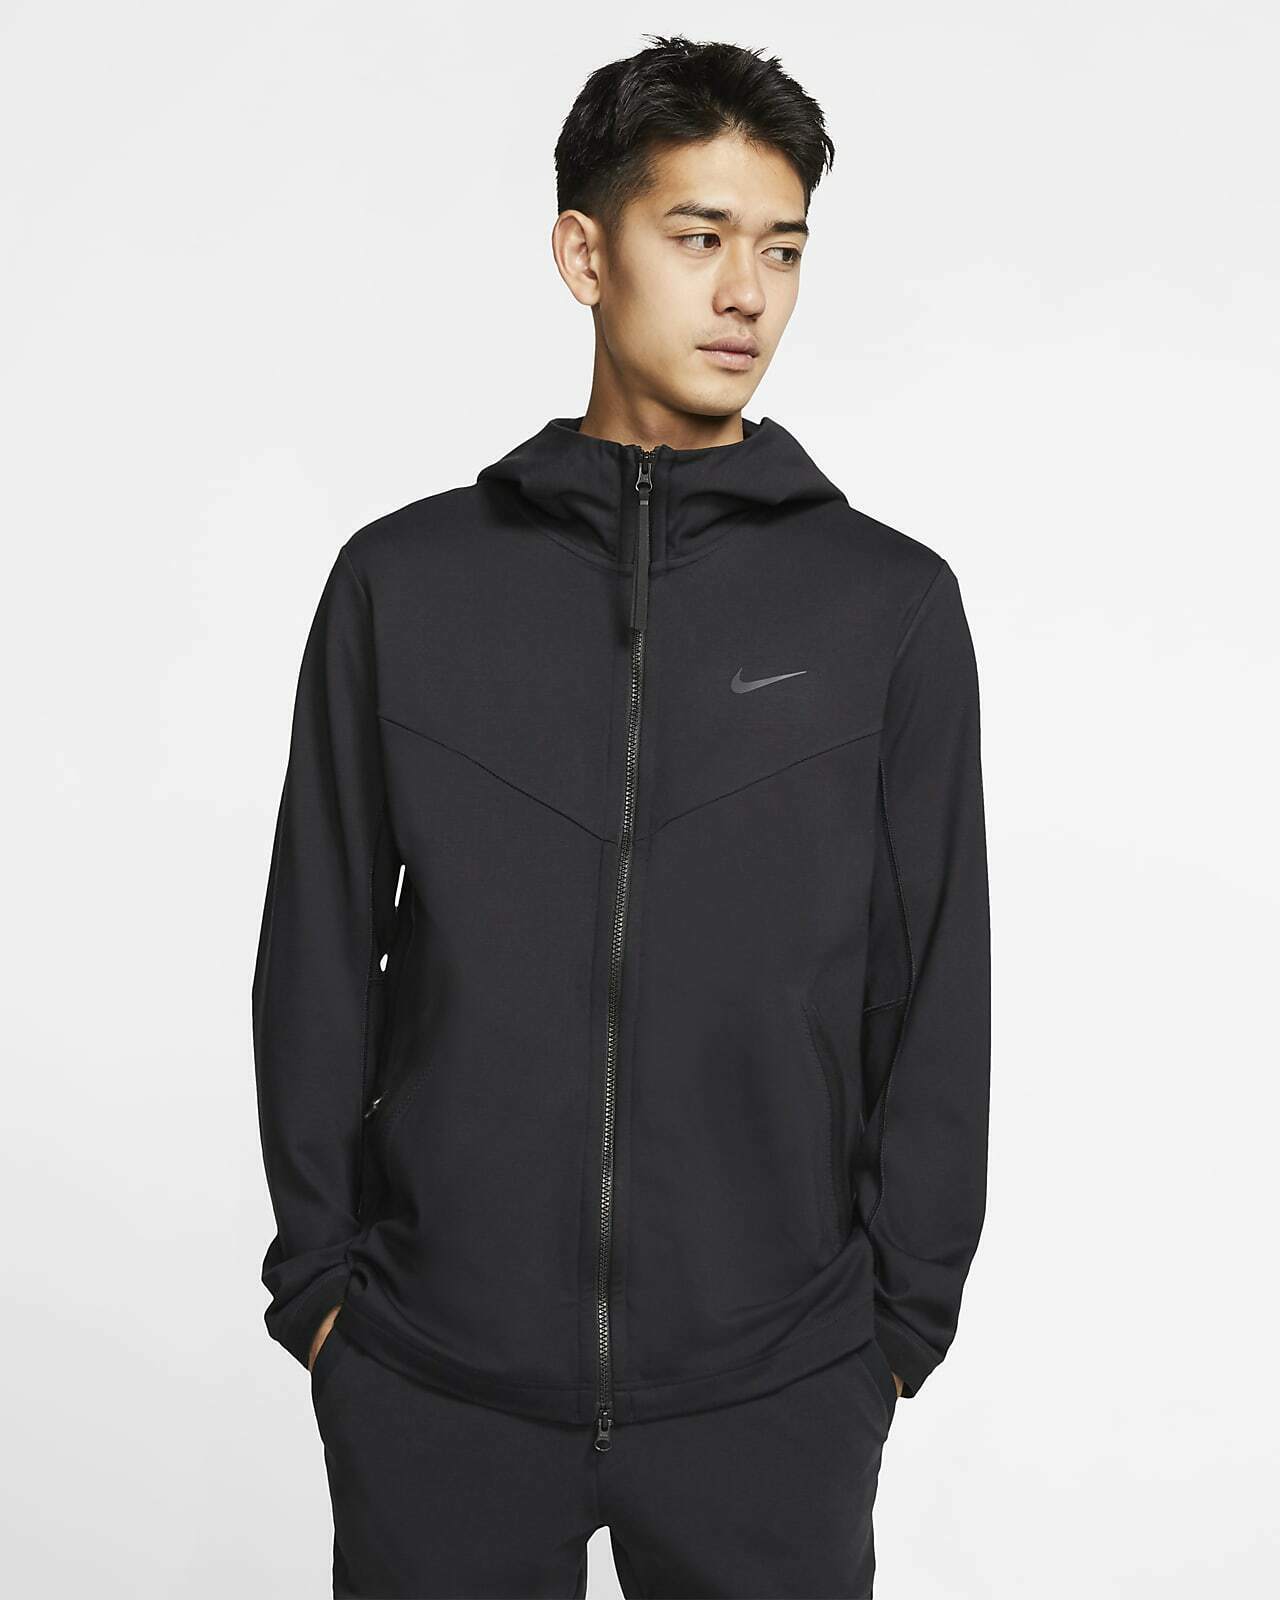 Nike Sportswear Tech Pack Men's Hooded Full-Zip Jacket (Black) Size XL - image 1 of 4